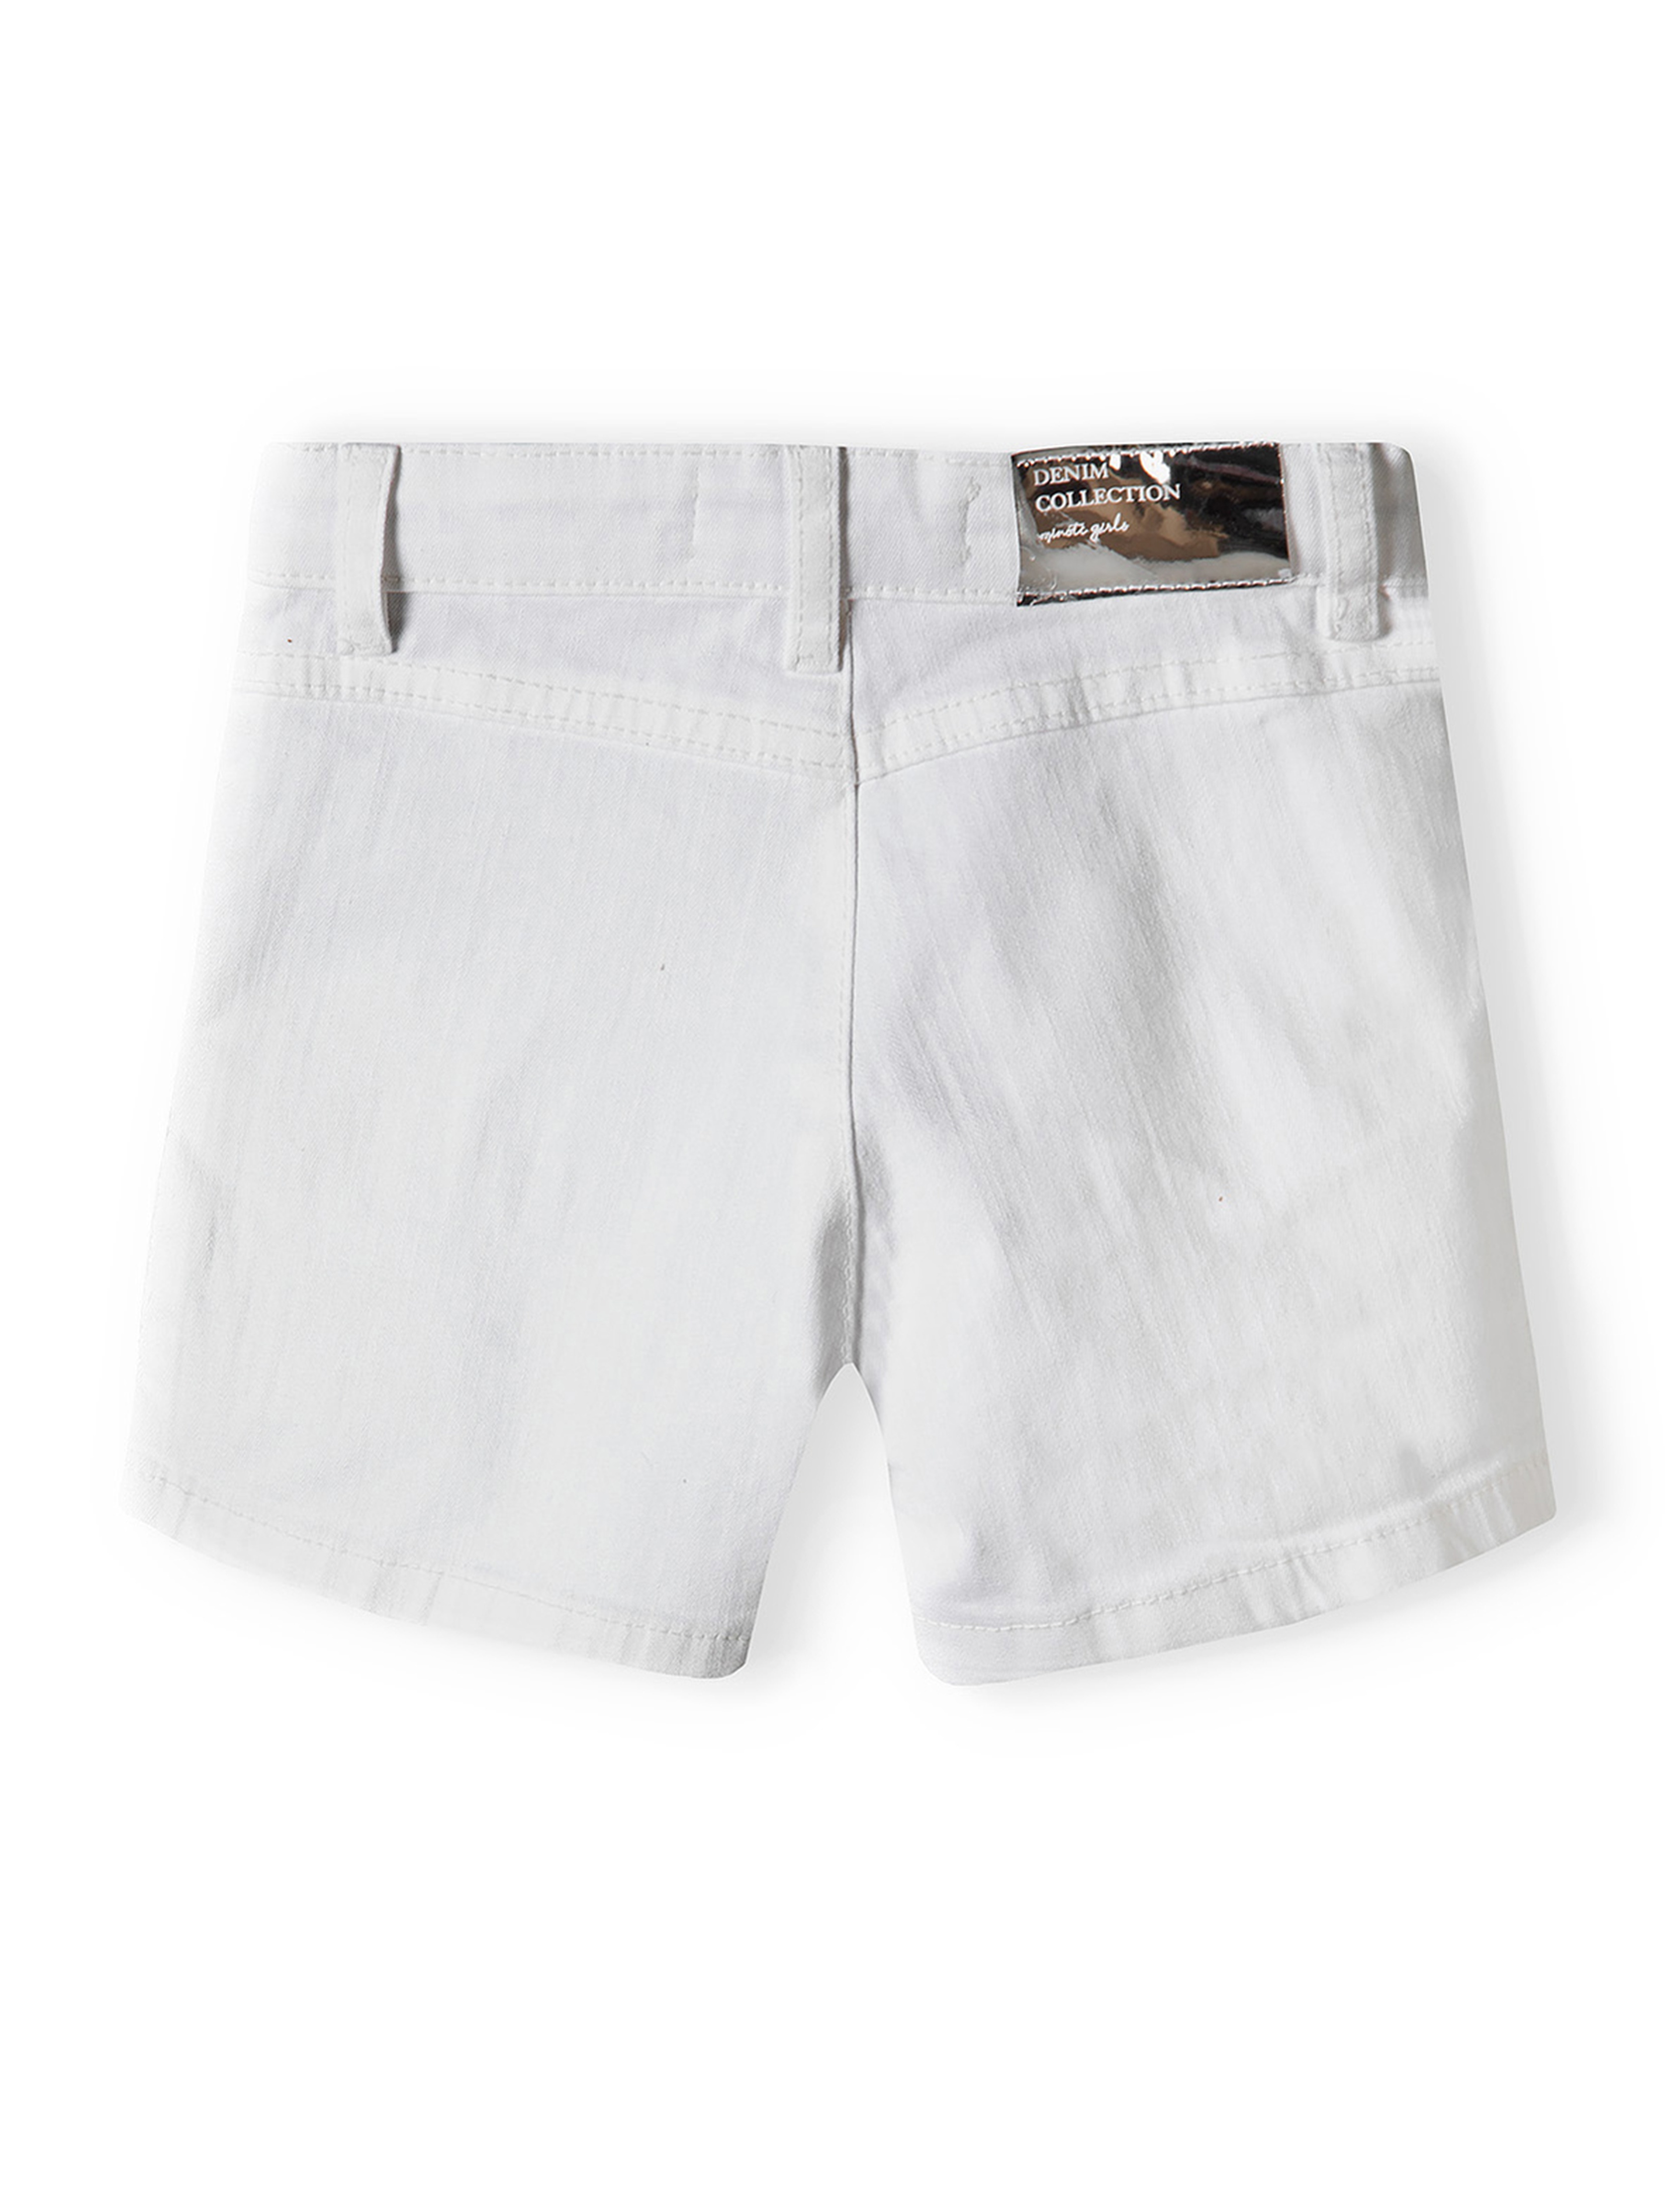 Białe szorty jeansowe dla niemowlaka z ozdobnymi kieszonkami